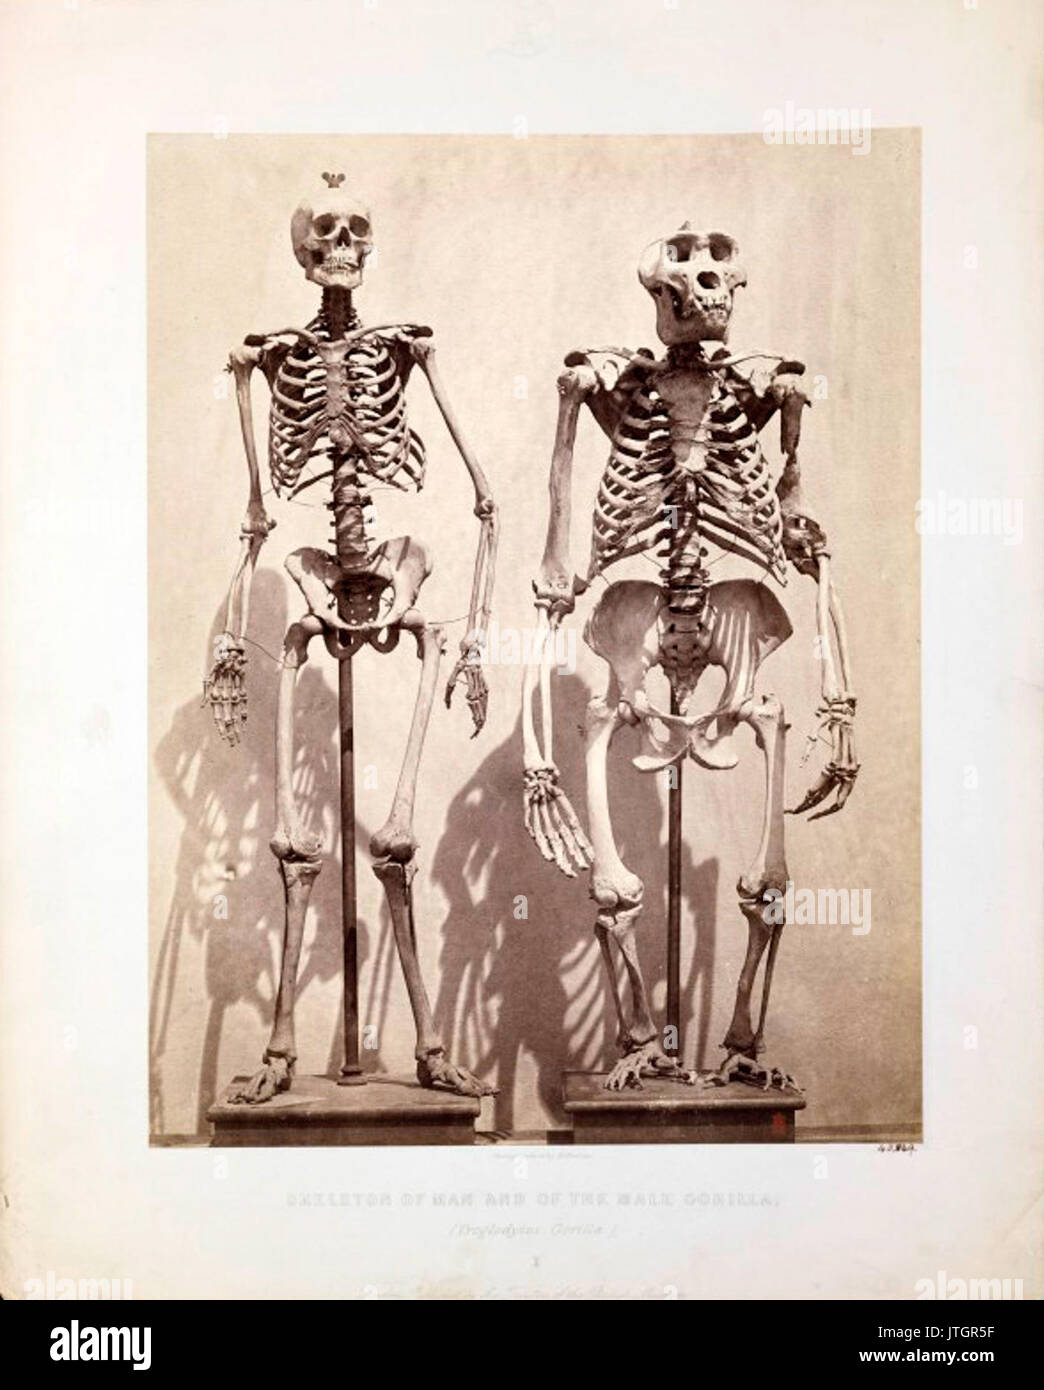 Squelette de l'homme et de l'homme gorille (Gorilla Troglodytes) Banque D'Images